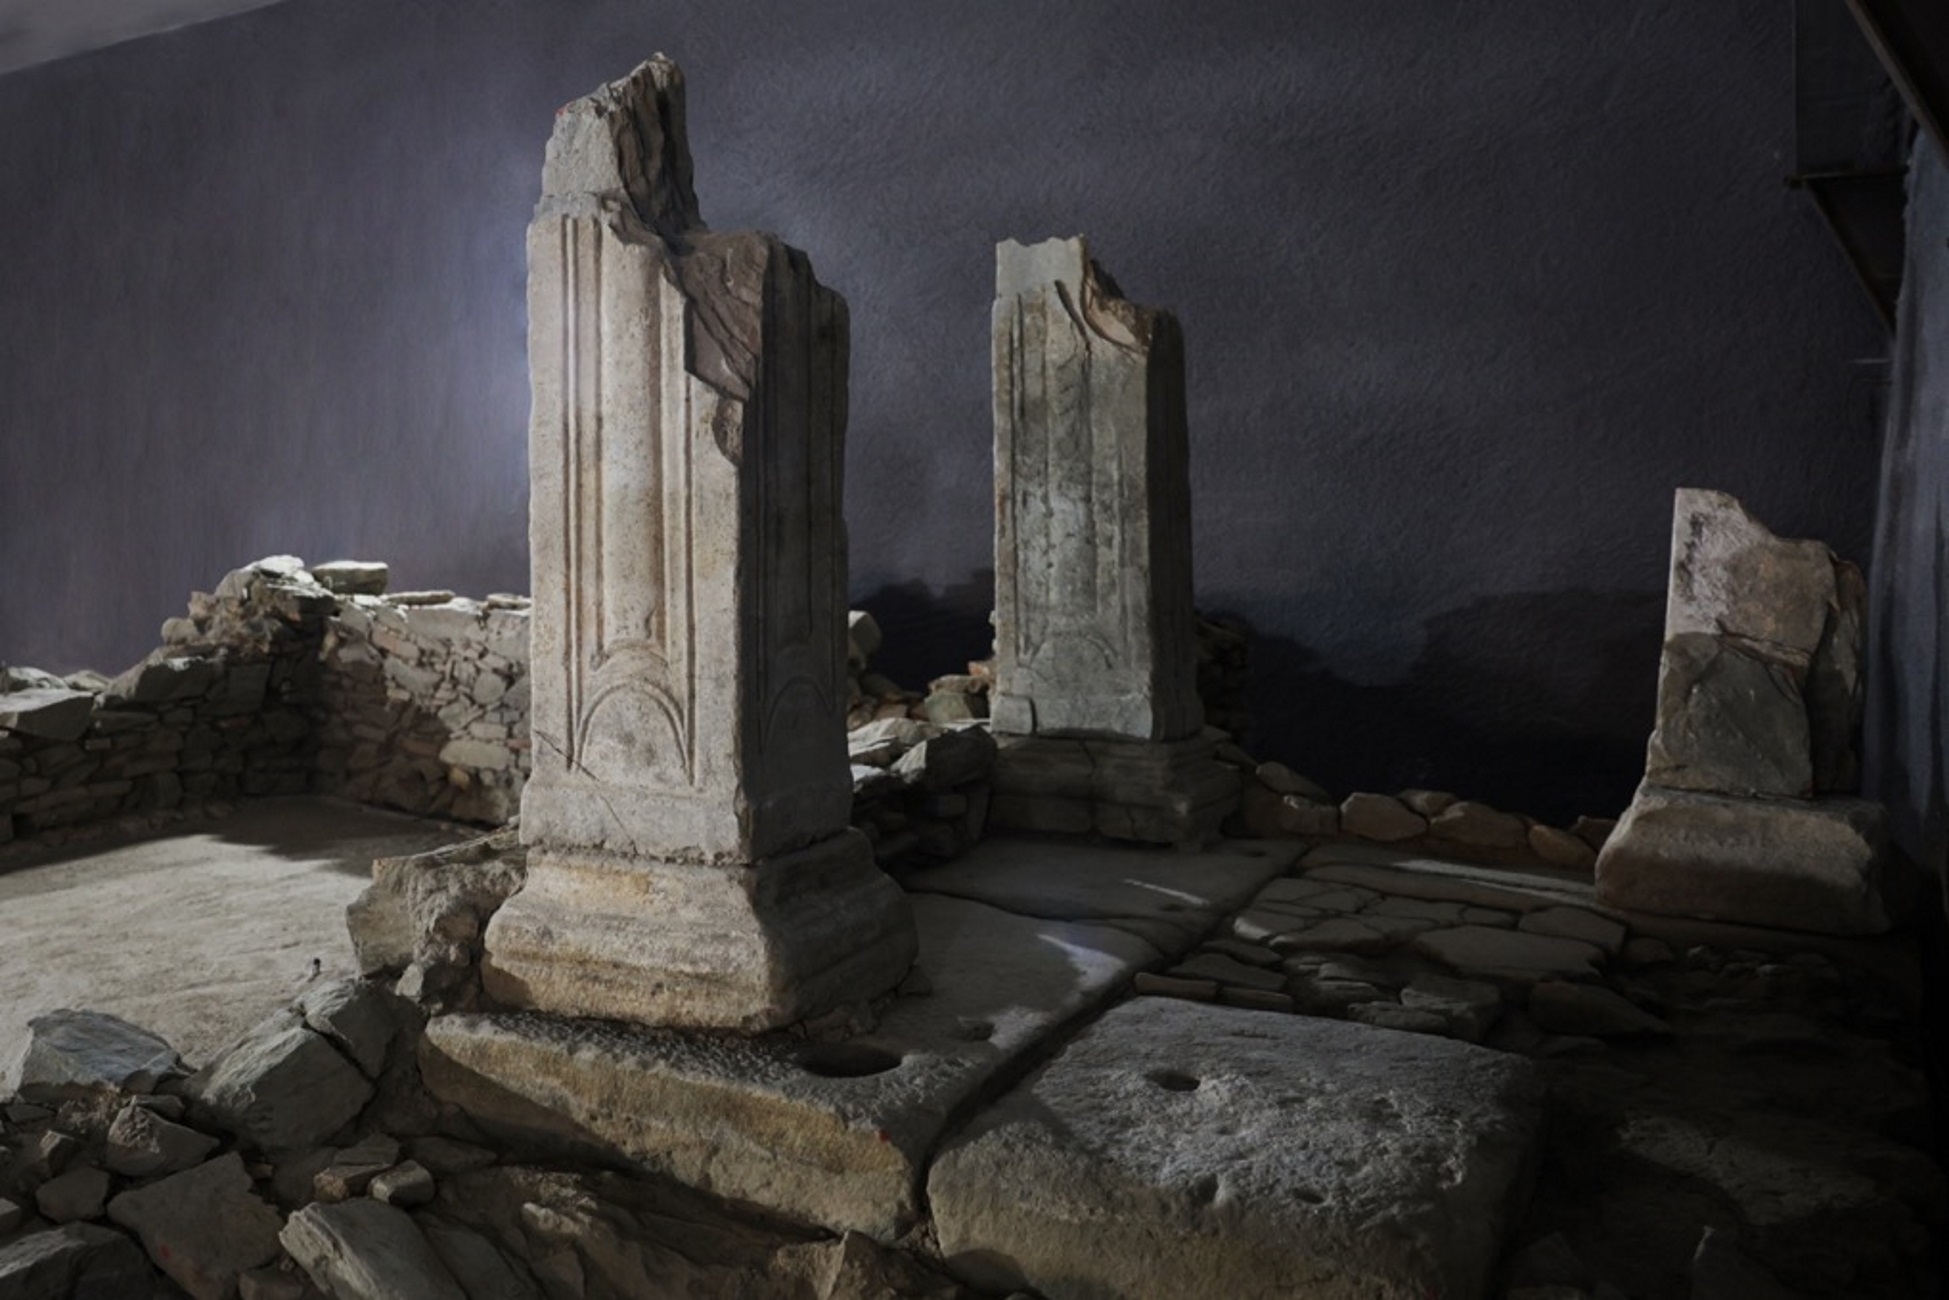 Μετρό Θεσσαλονίκης: Εικόνες από την επανατοποθέτηση αρχαιοτήτων στον Σταθμό Βενιζέλου